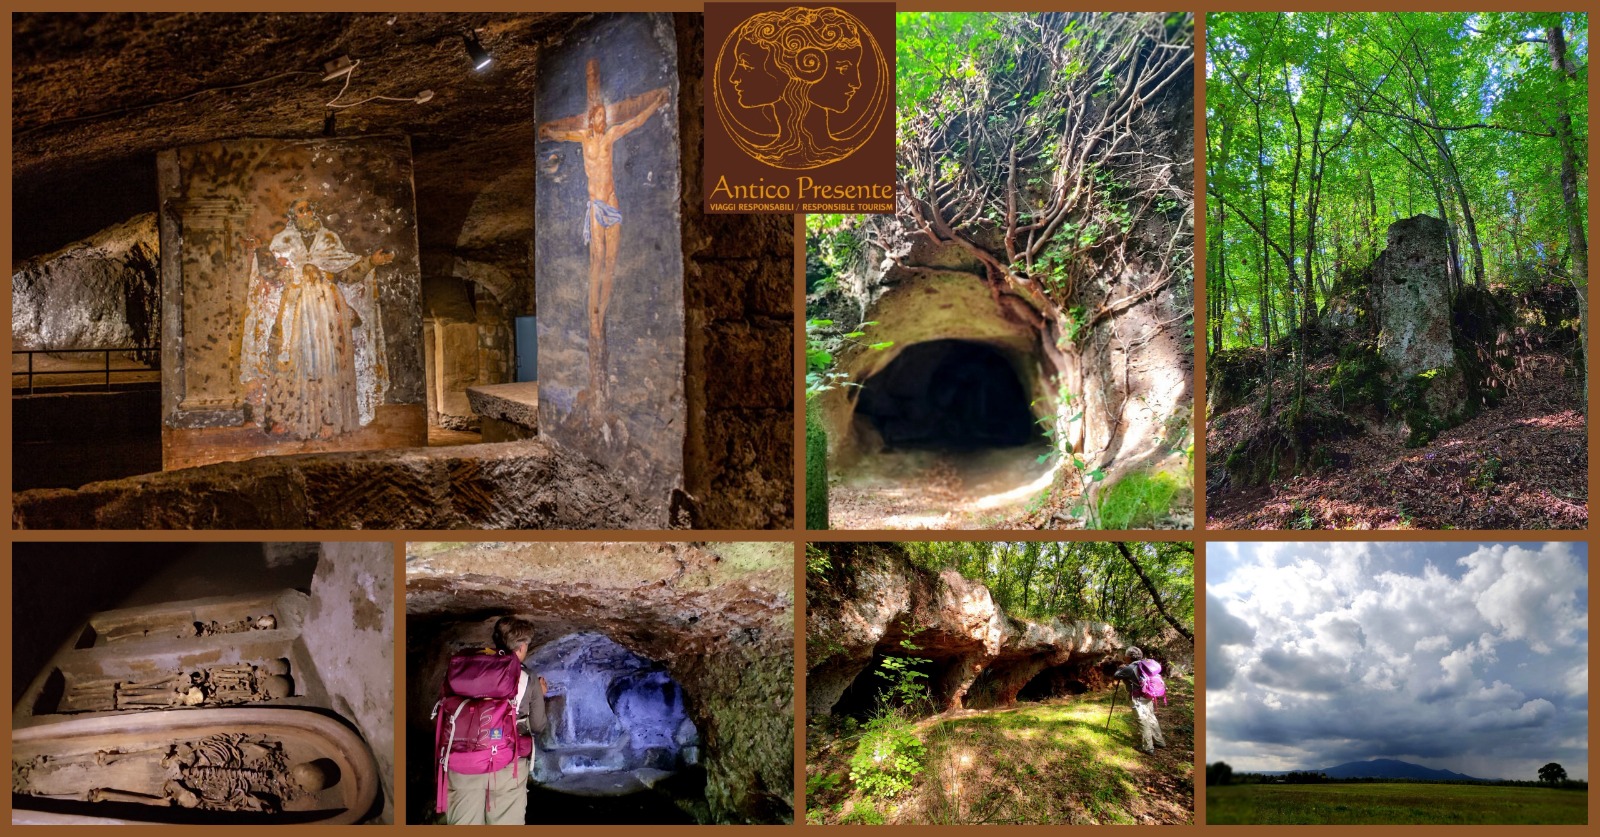 La Valle Oscura e l’acqua miracolosa nelle catacombe di Sant’Eutizio (VT)